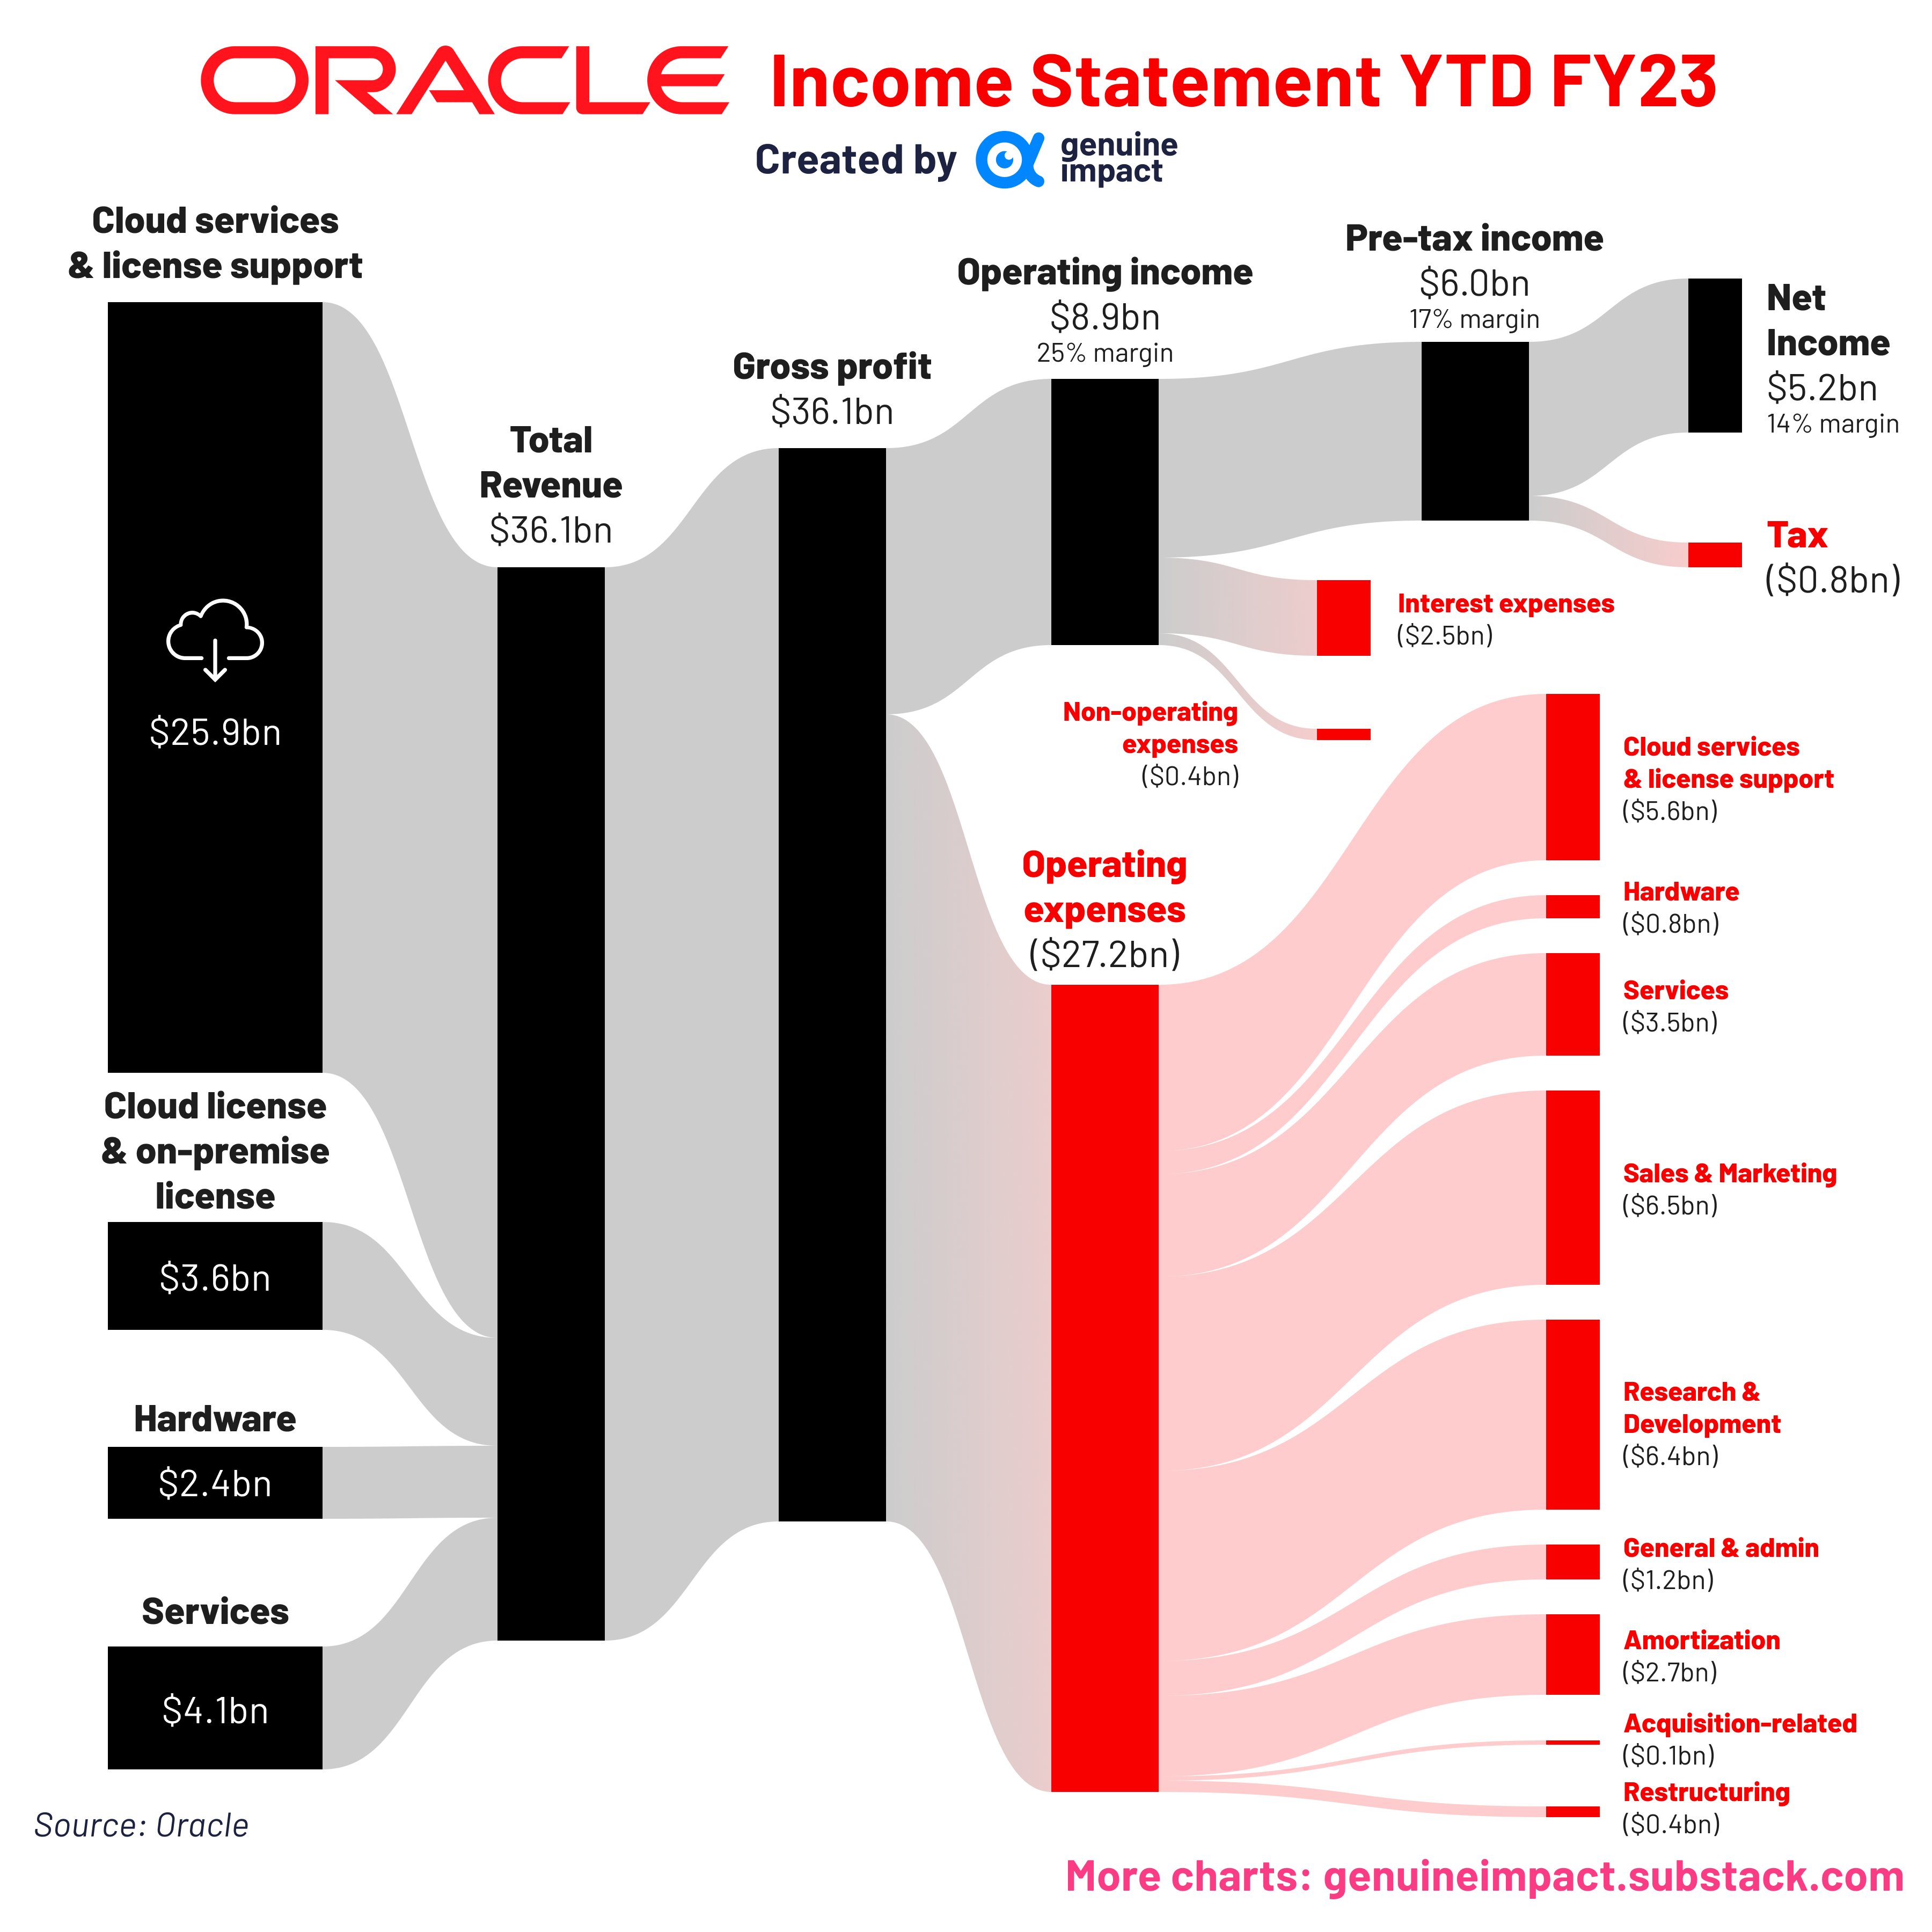 Oracle Cloud: Oracle sees revenue below estimates as cloud spending  sputters, ET Telecom